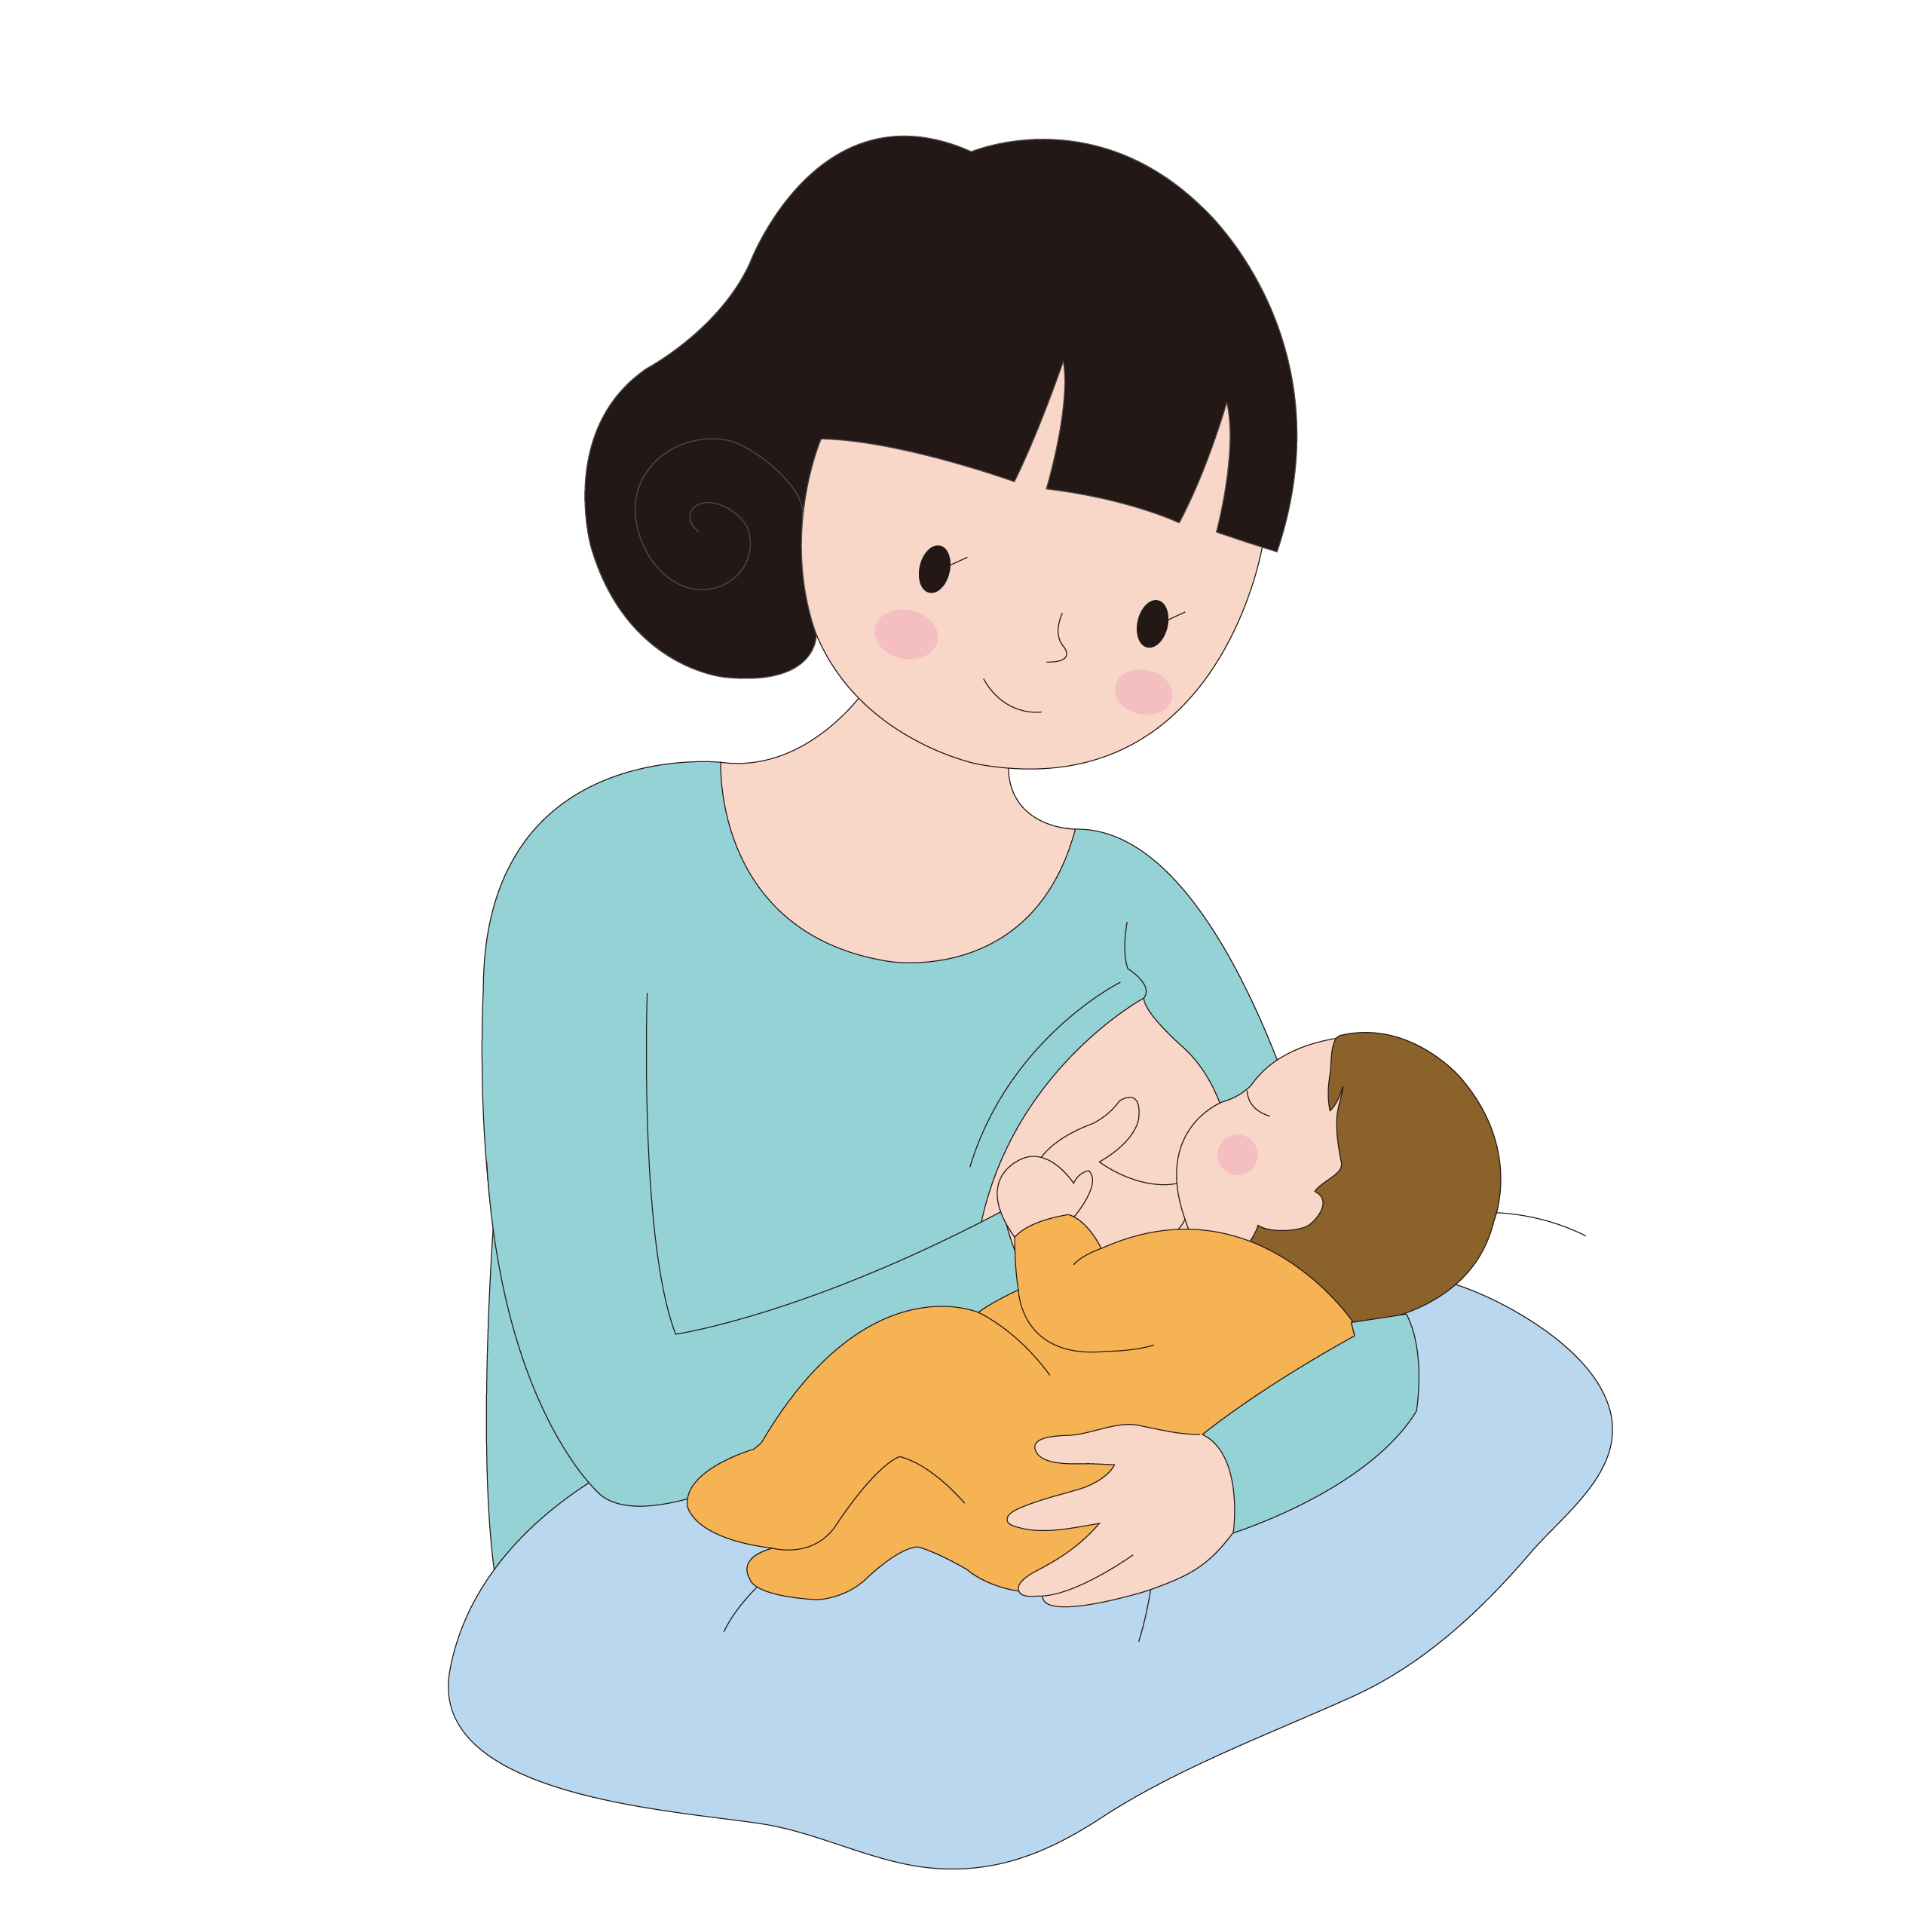 母乳的政策,使医院或月子中心都必须在产妇签署同意书之后,才能喂宝宝